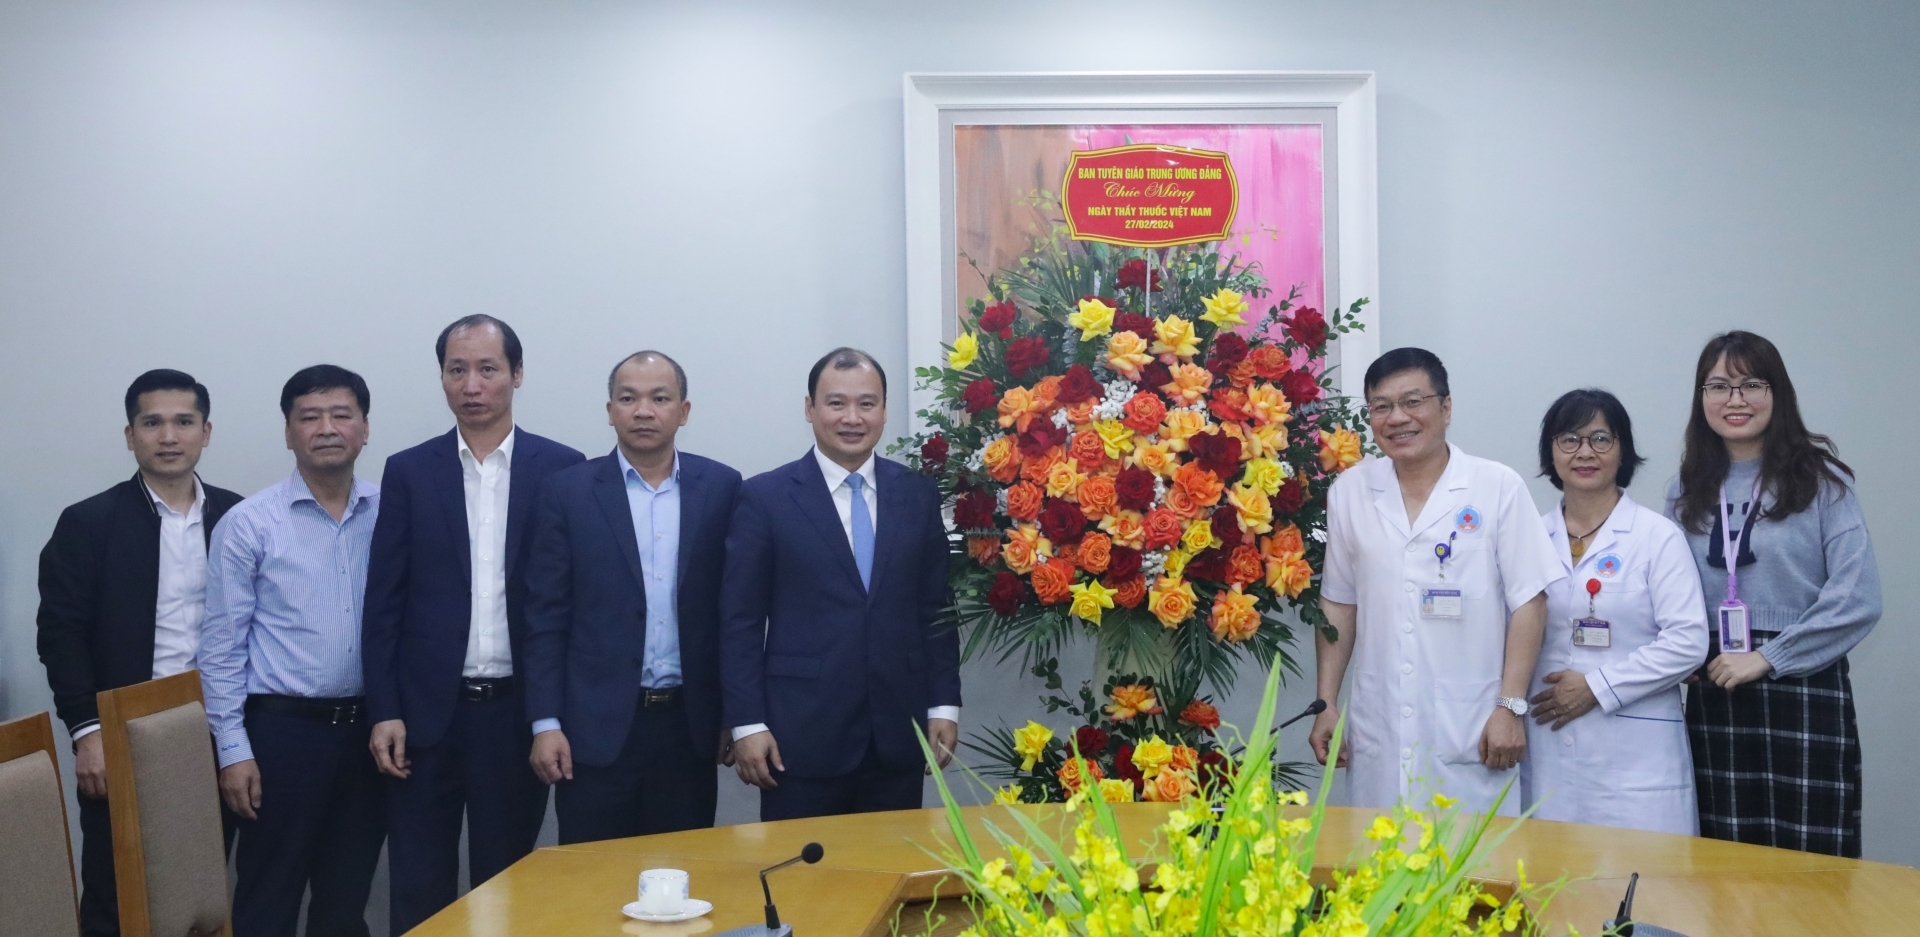 Đồng chí Lê Hải Bình tặng hoa chúc mừng Bệnh viện Hữu Nghị Việt Xô nhân kỷ niệm 69 năm Ngày Thầy thuốc Việt Nam (27/2/1955 - 27/2/2024).